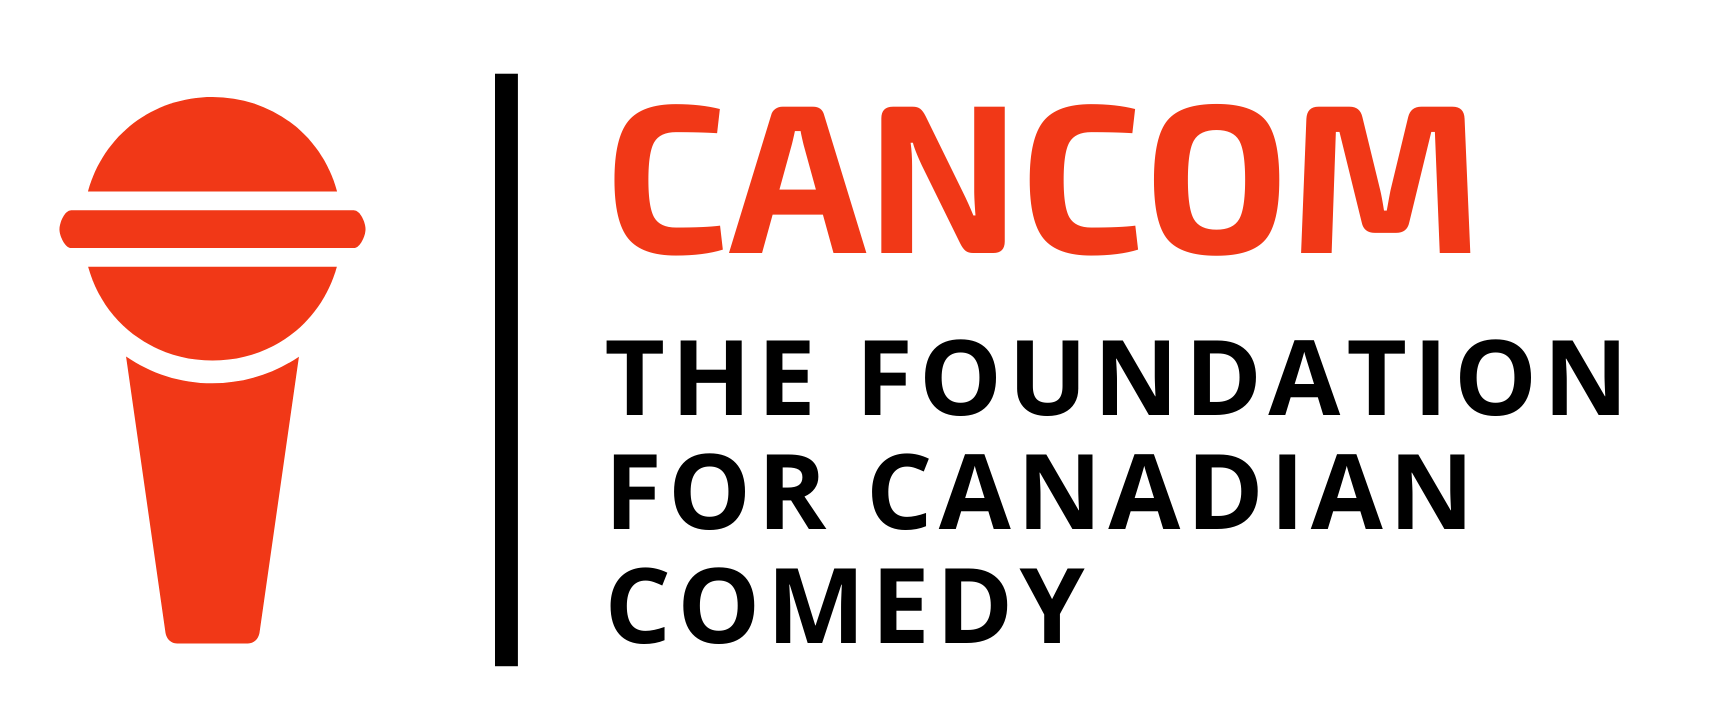 CANCOM Comedy Funding